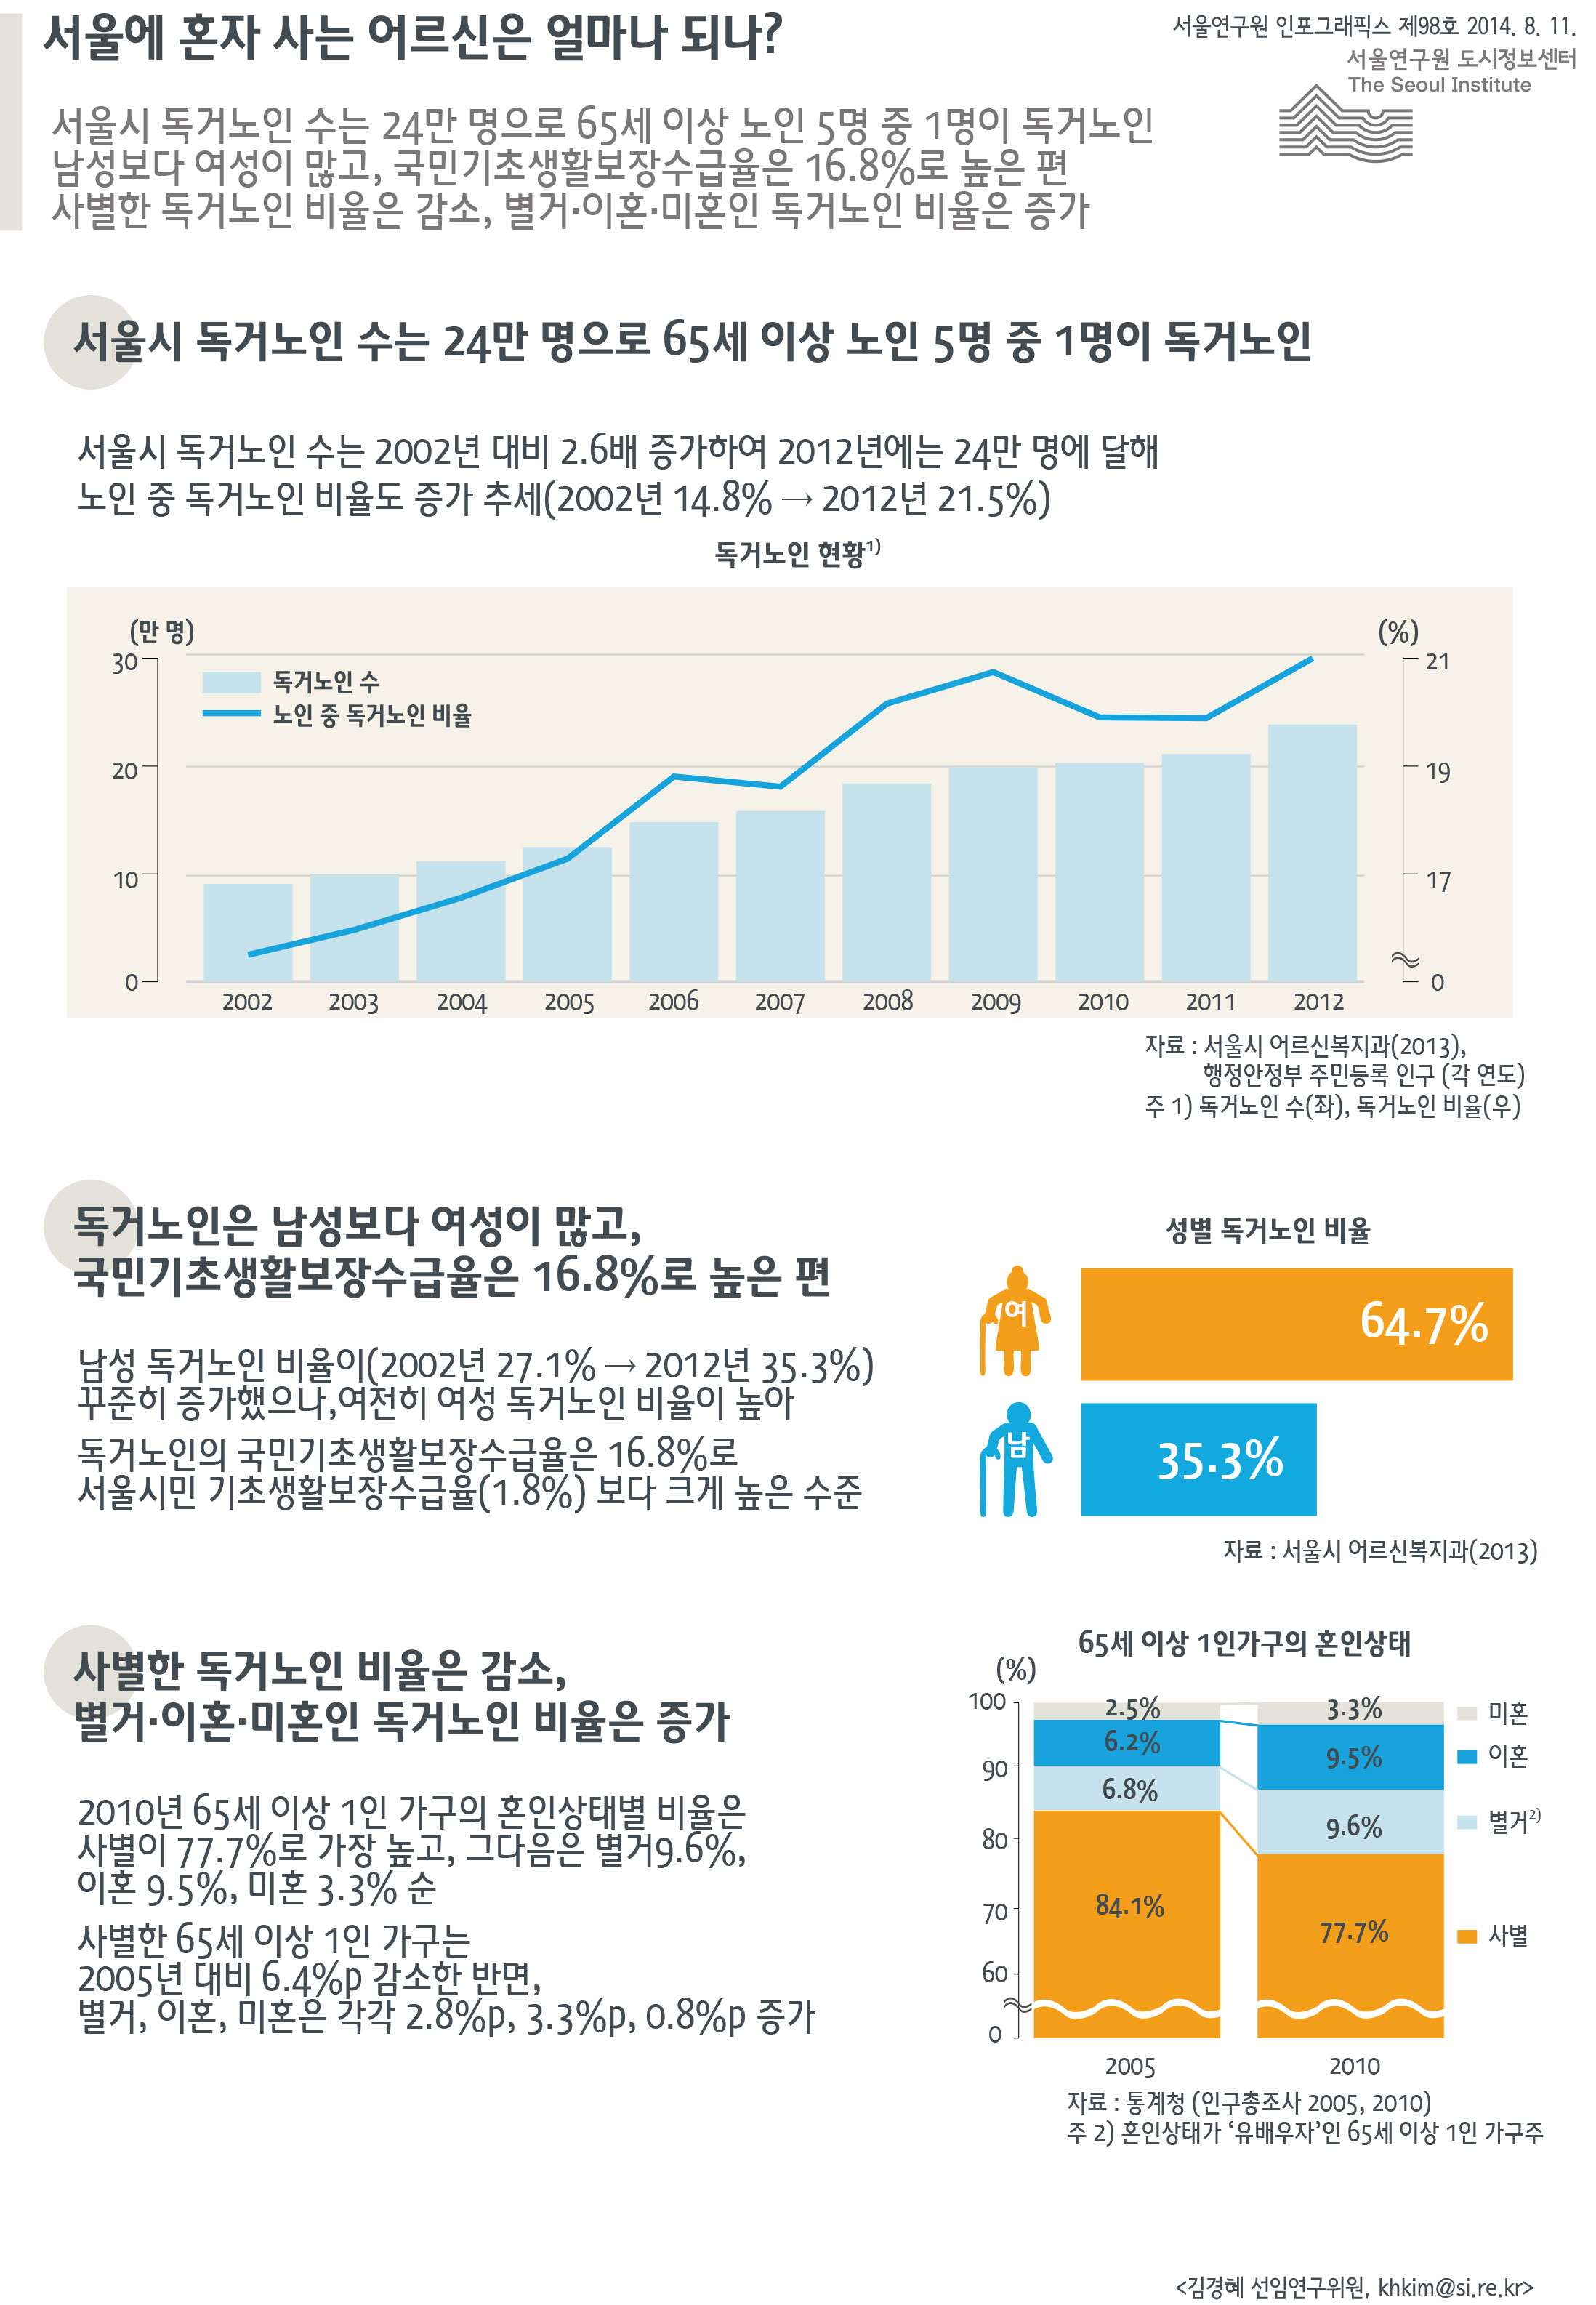 서울에 혼자 사는 어르신은 얼마나 되나? 서울인포그래픽스 제98호 2014년 8월 11일 서울시 독거노인 수는 24만 명으로 65세 이상 노인 5명 중 1명이 독거노인. 남성보다 여성이 많고, 국민기초생활보장수급율은 16.8로 높은 편. 사별한 독거노인 비율은 감소, 별거·이혼·미혼인 독거노인 비율은 증가함으로 정리될 수 있습니다. 인포그래픽으로 제공되는 그래픽은 하단에 표로 자세히 제공됩니다.